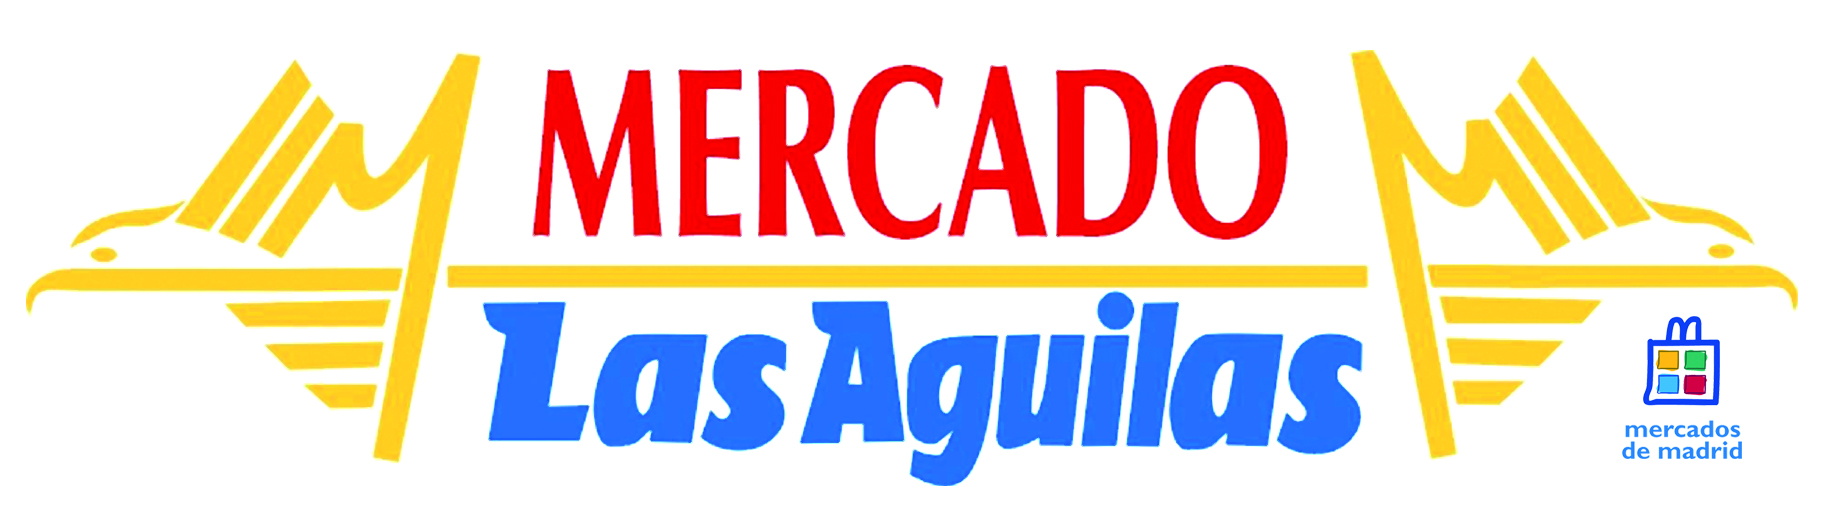 Logotipo Mercado Las Aguilas